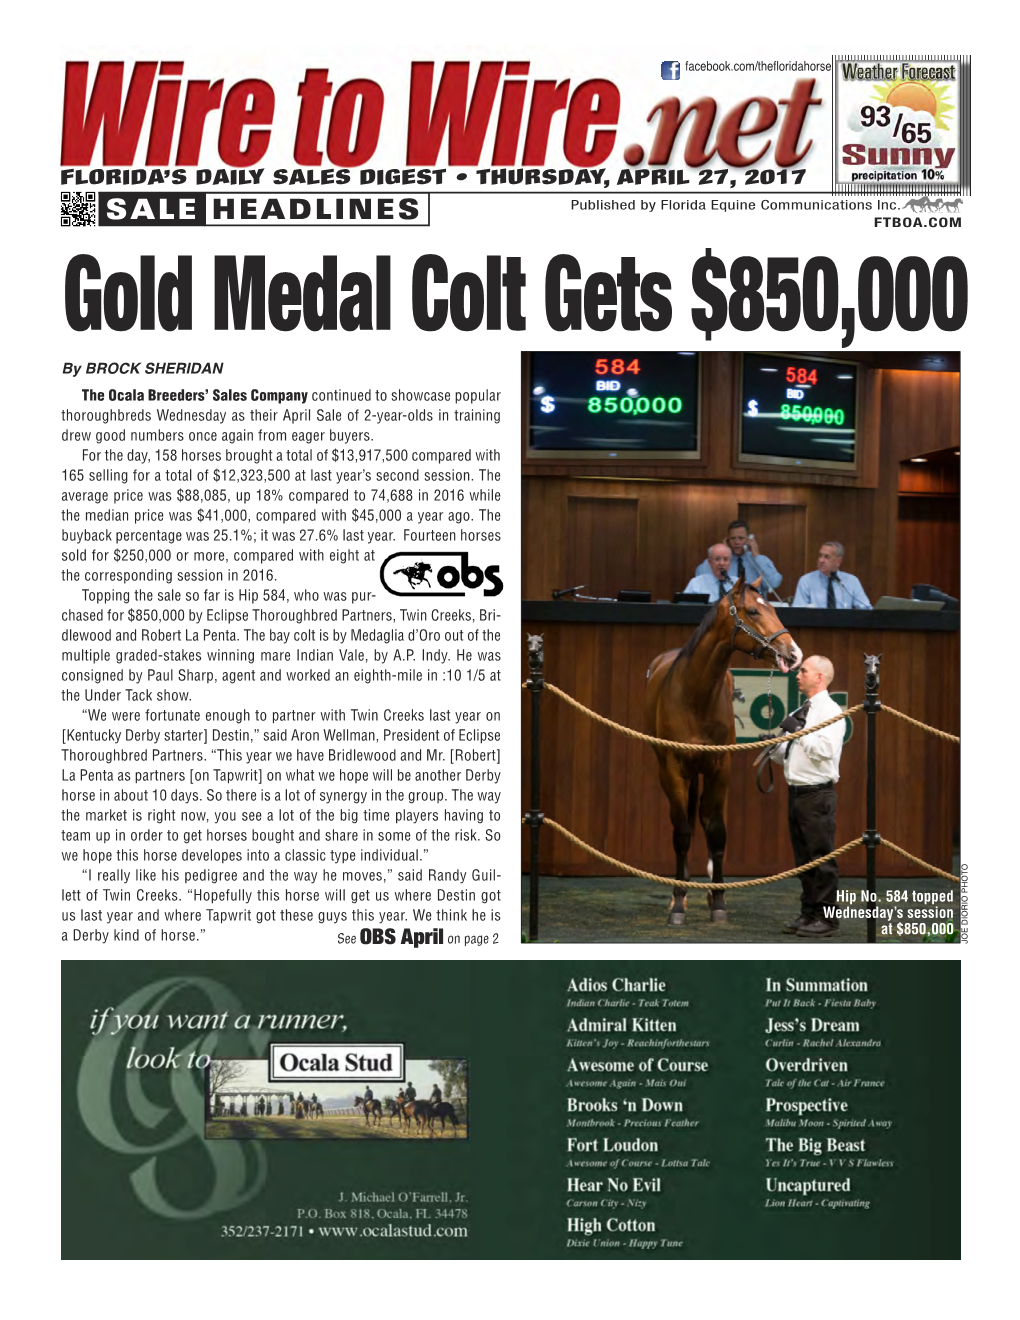 Gold Medal Colt Gets $850,000